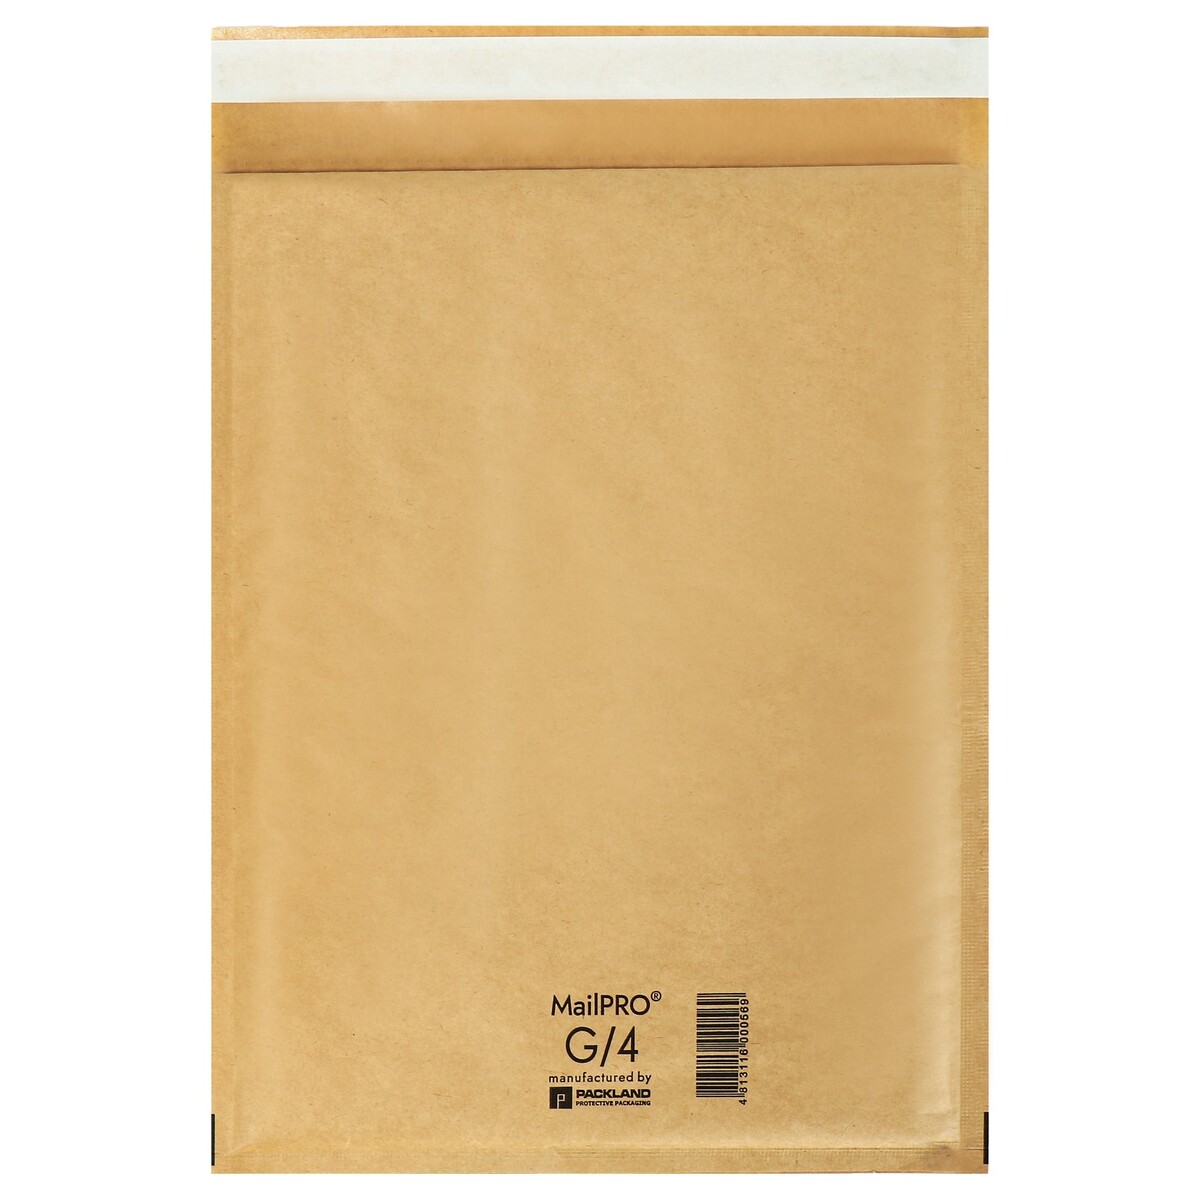 Набор крафт-конвертов с воздушно-пузырьковой пленкой 24х33 g/4, крафт, 5шт пакет бумажный фасовочный крафт v образное дно 25 х 17 х 7 см набор 100 шт